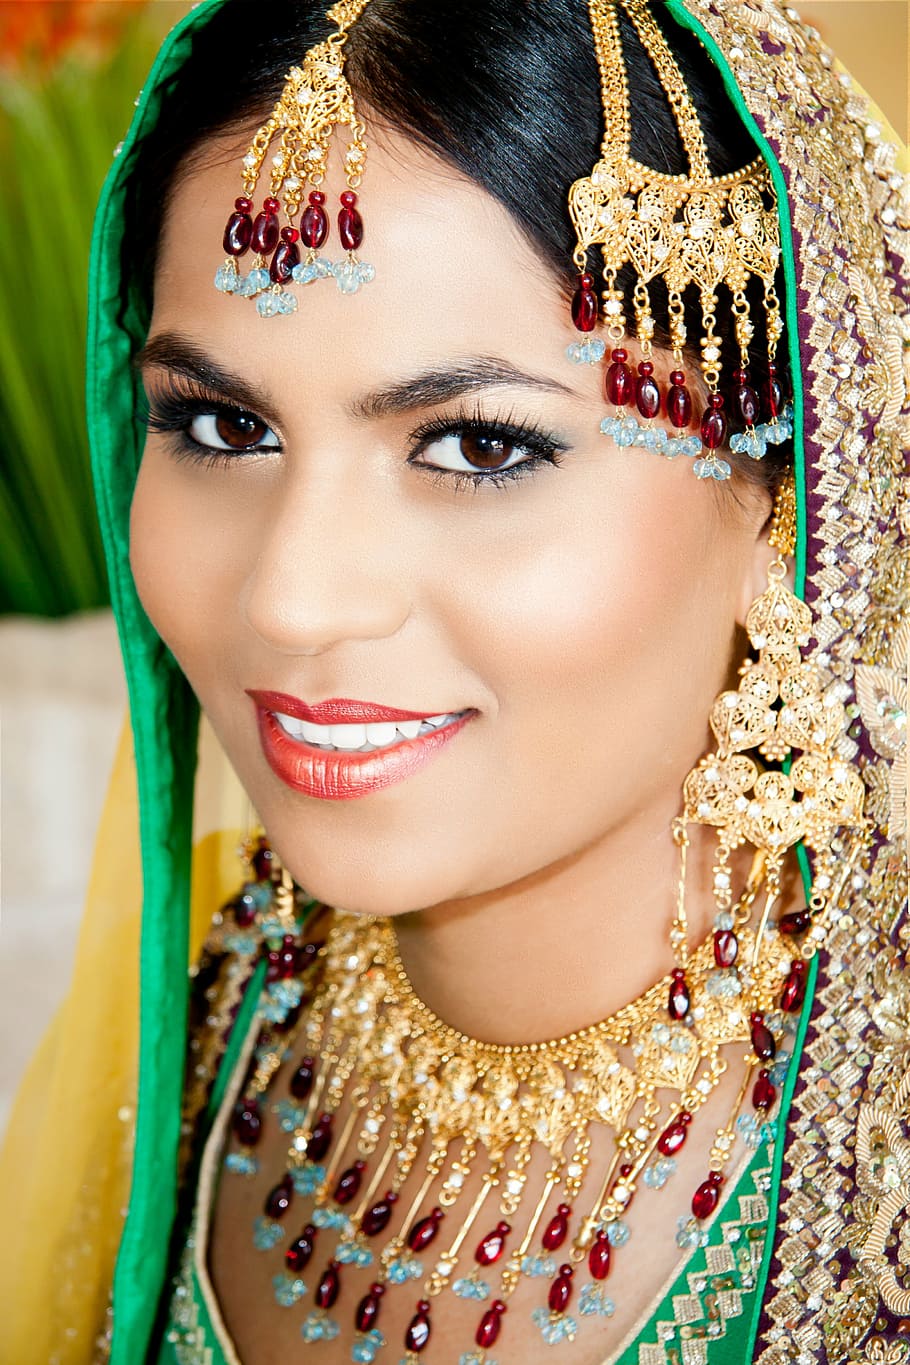 wanita, mengenakan, perhiasan emas, merah, biru, batu permata, wanita tersenyum, pakistan, India, budaya